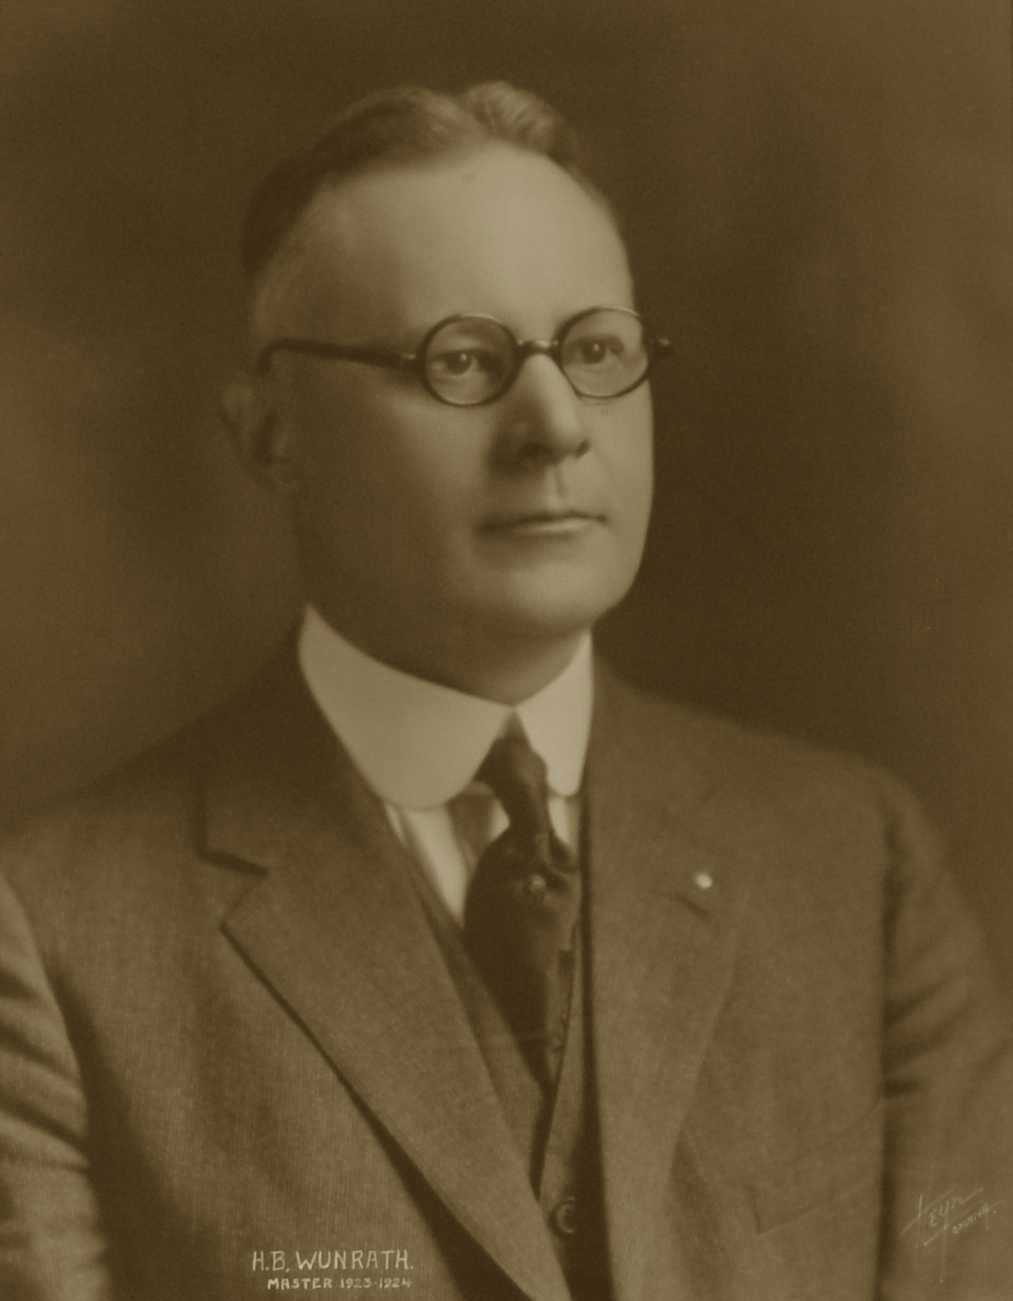 H. B. Wunrath, 1923-1924